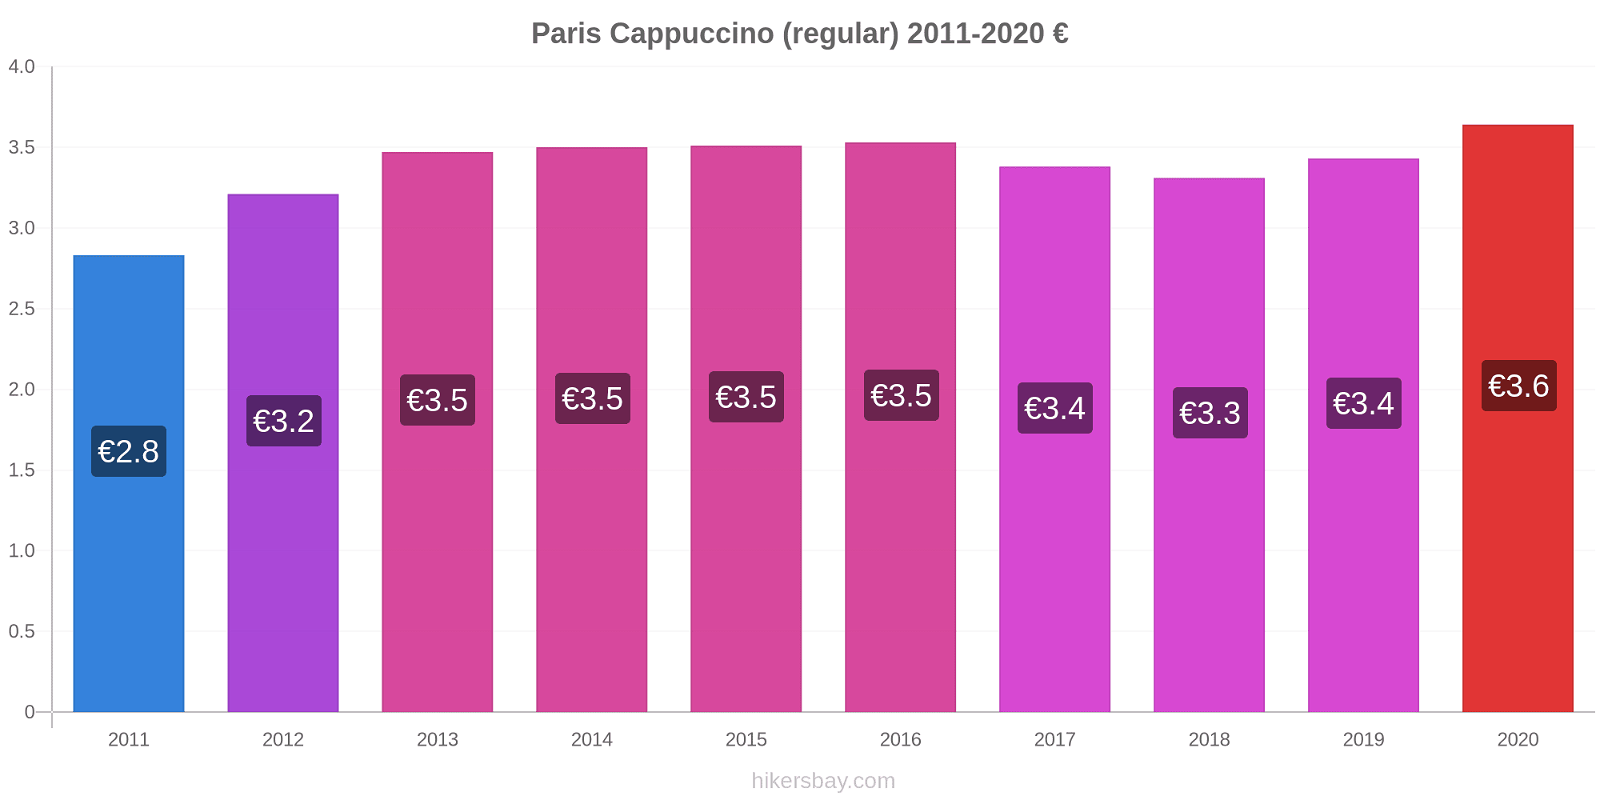 Paris price changes Cappuccino (regular) hikersbay.com